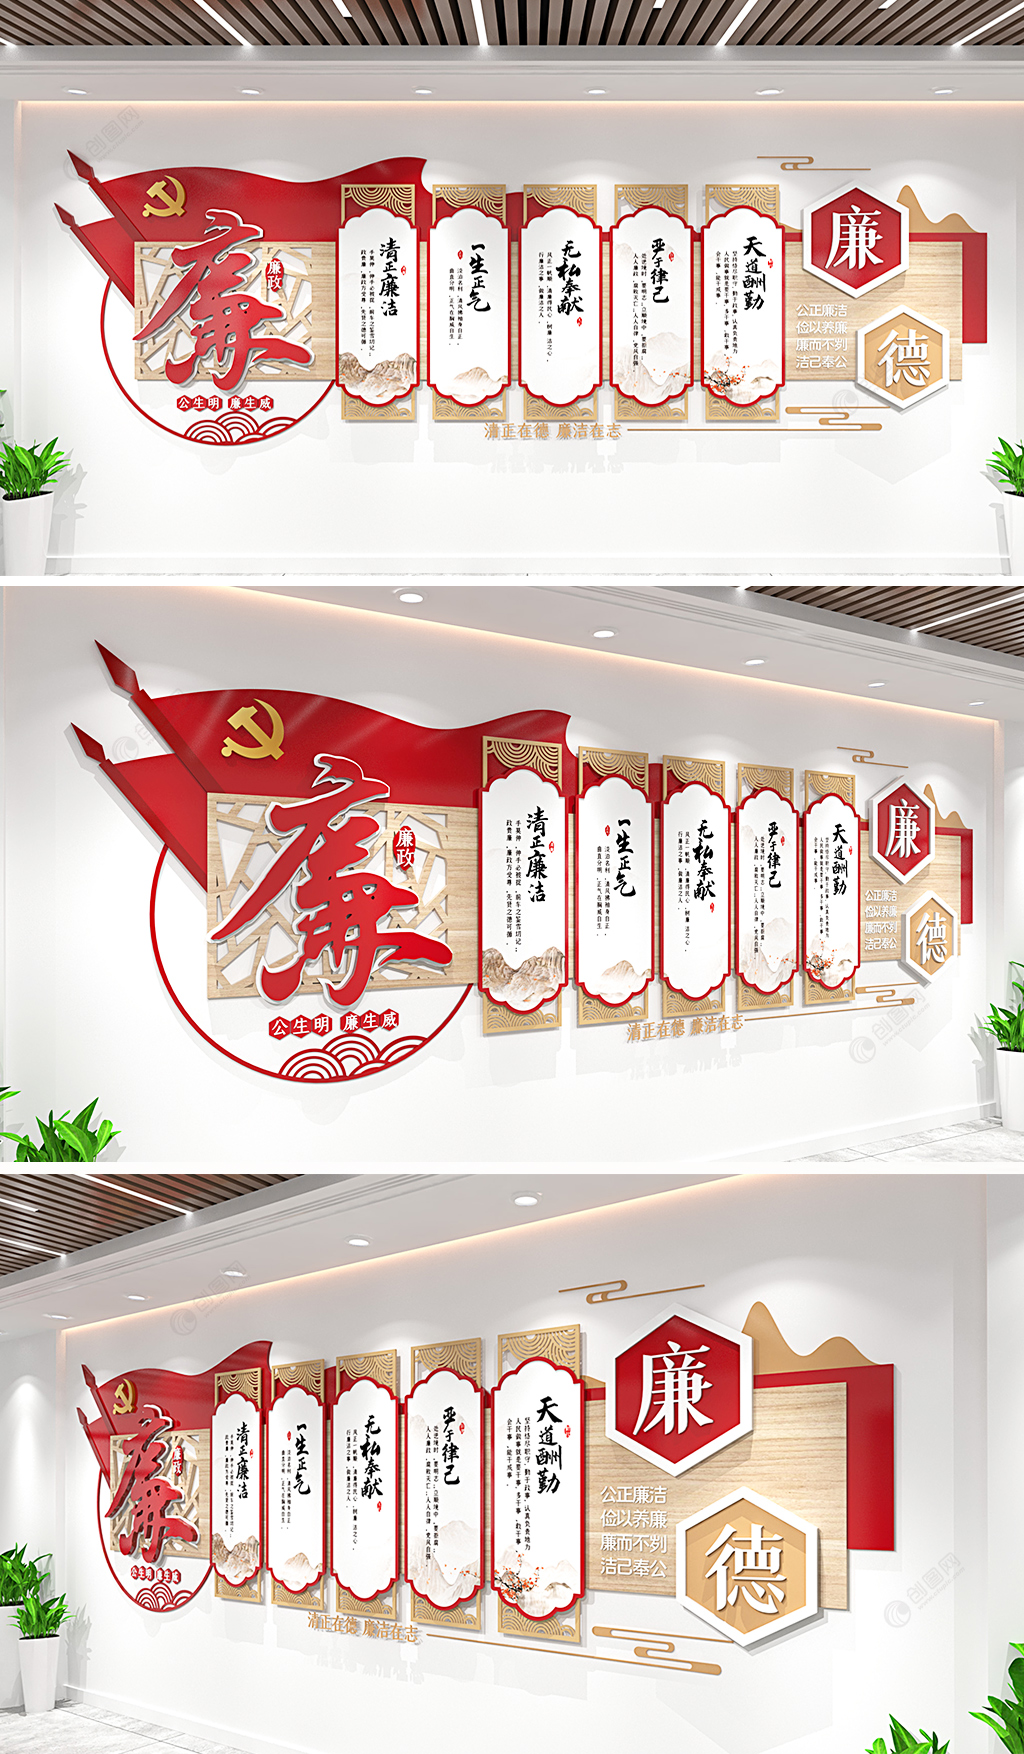 中国风廉政文化墙党建文化墙廉政文化长廊形象